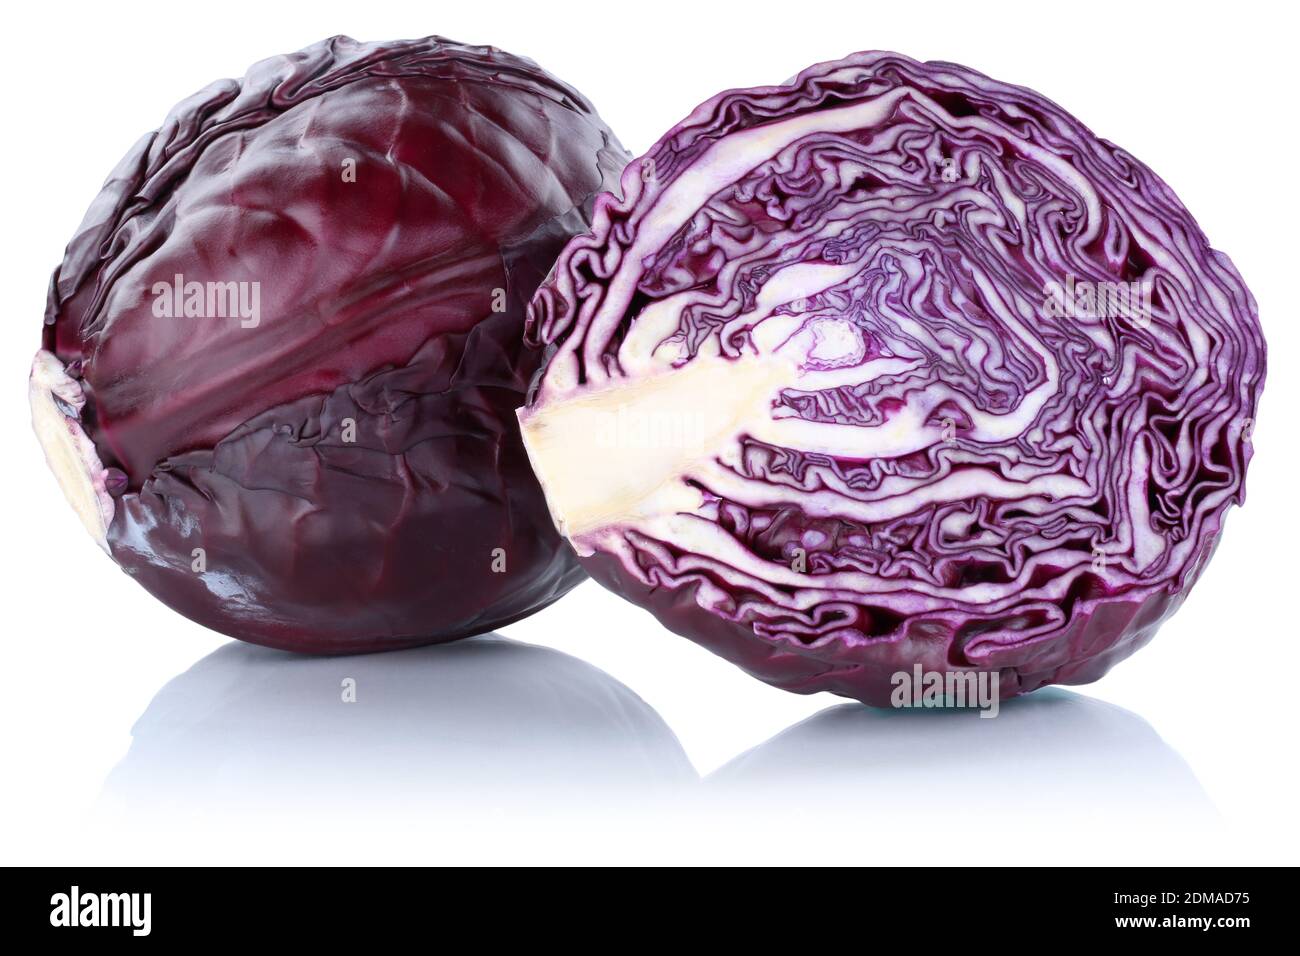 Blaukraut Rotkohl Kraut Kohl geschnitten Gemüse Freisteller freigestellt isoliert vor einem weissen Hintergrund Foto Stock